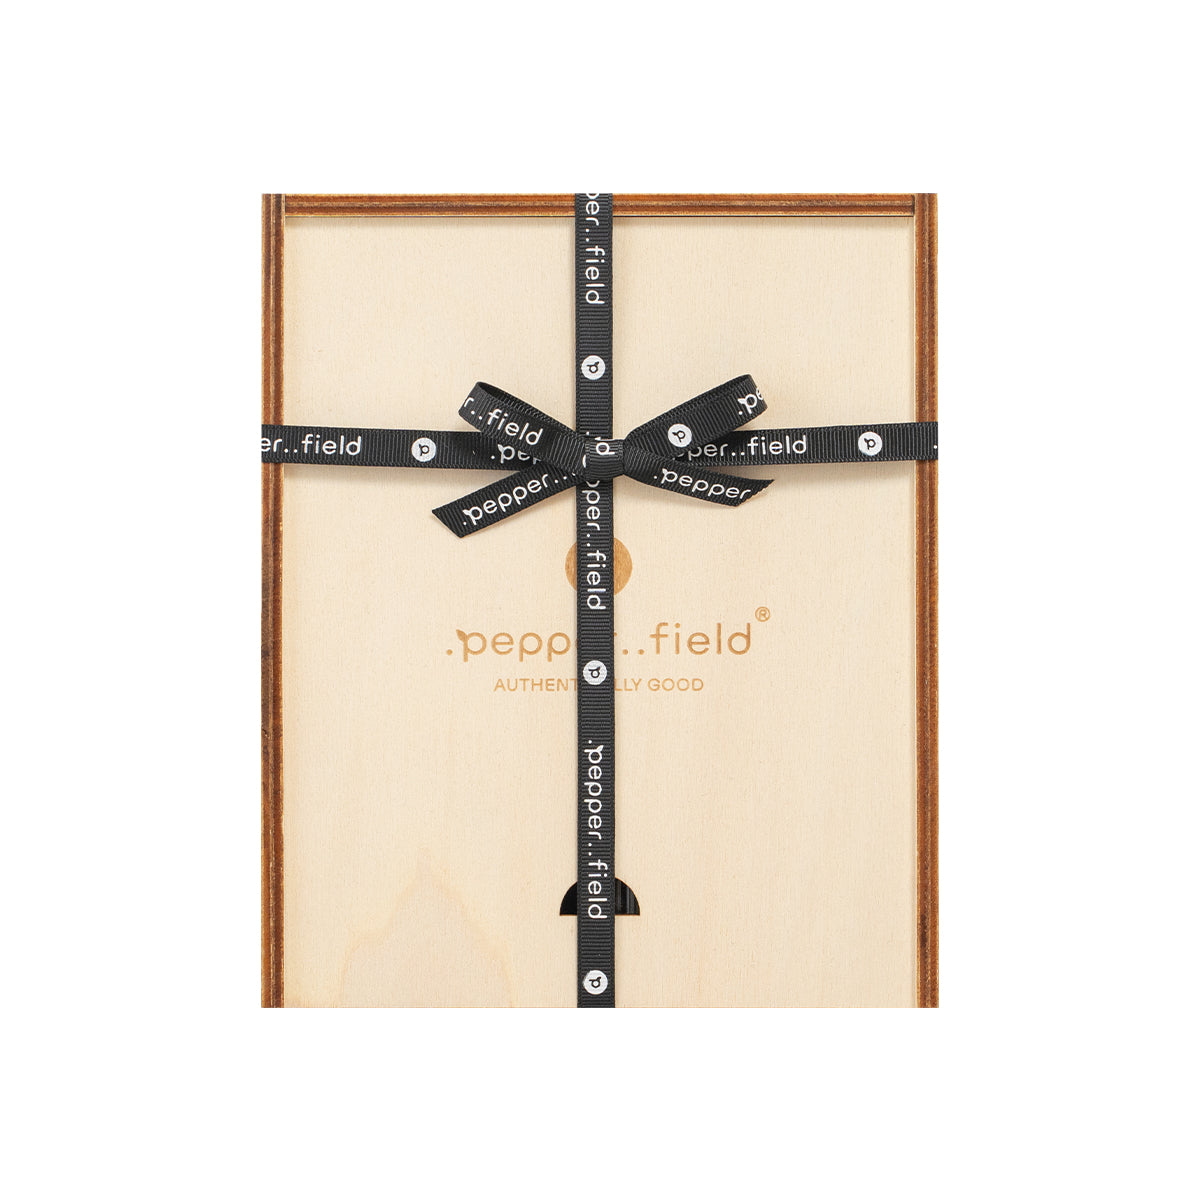 Skandinavische Pfeffermühle mit Glasröhrchen mit Kampot-Pfeffer in einer Geschenkbox aus Holz (3x10g)